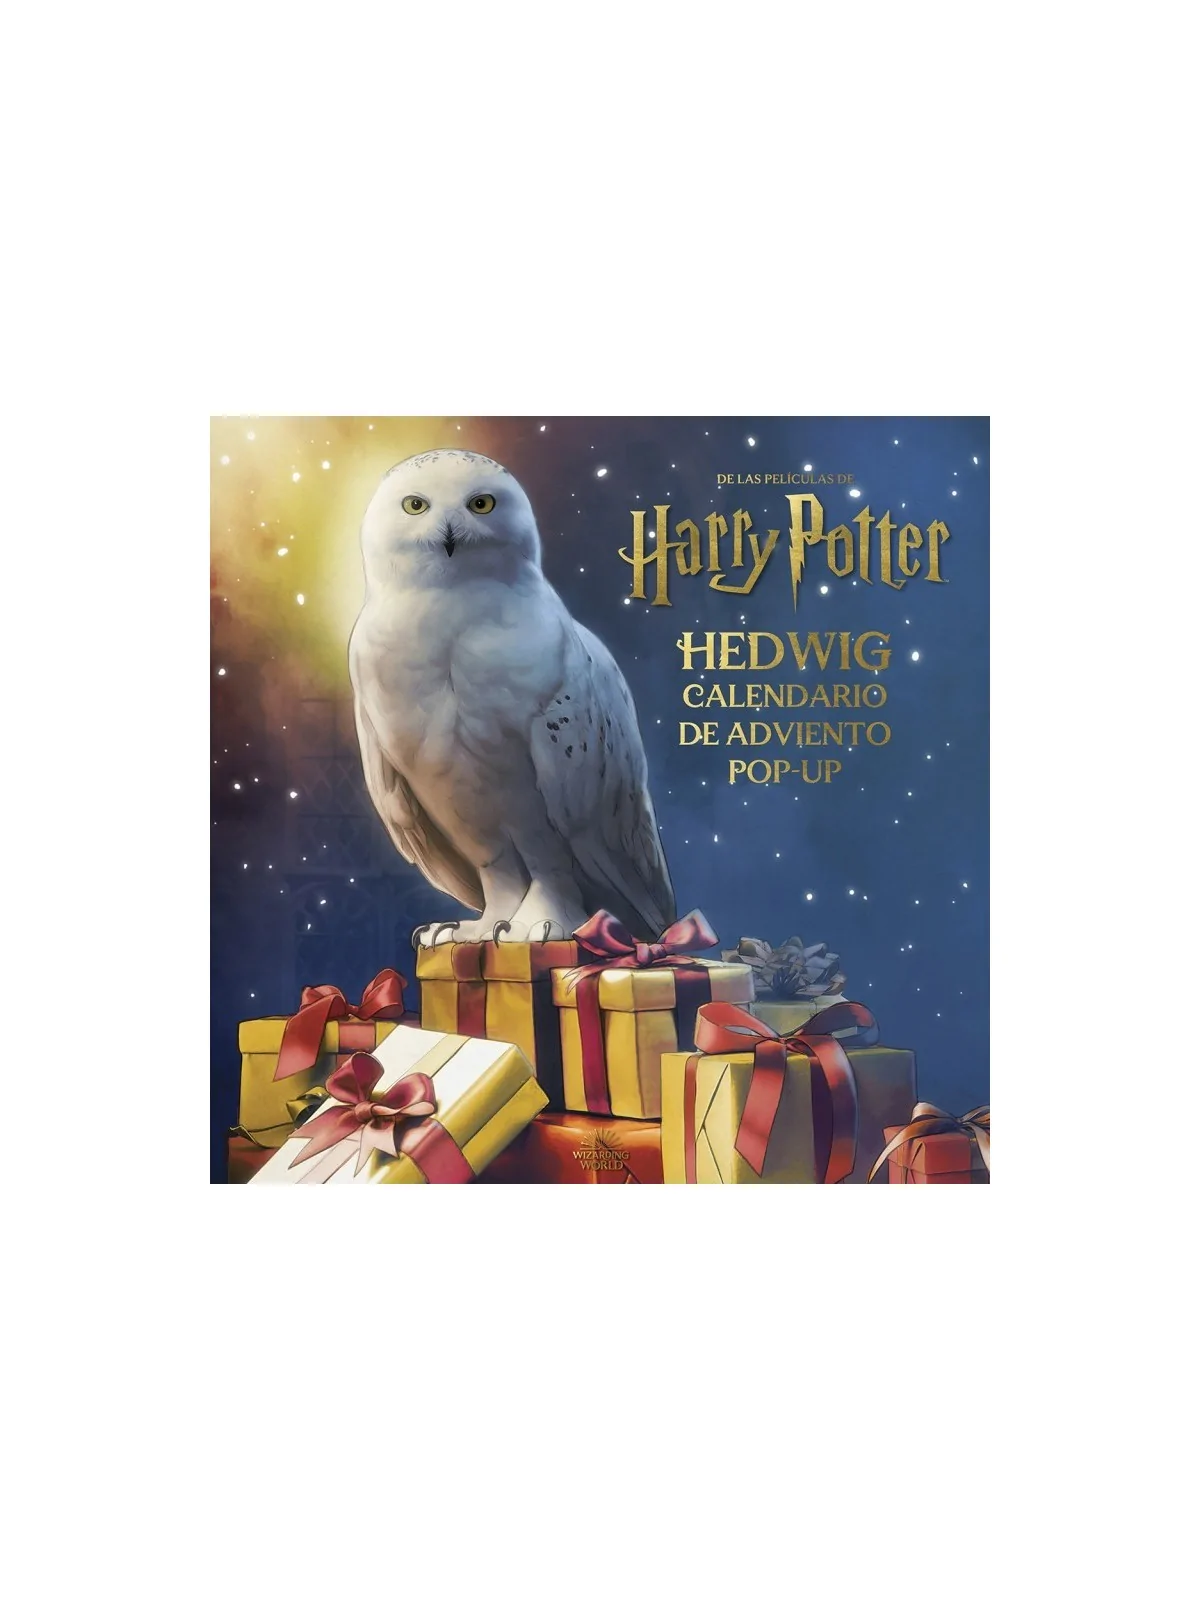 Comprar Harry Potter: Hedwig Calendario de Adviento Pop-Up barato al m